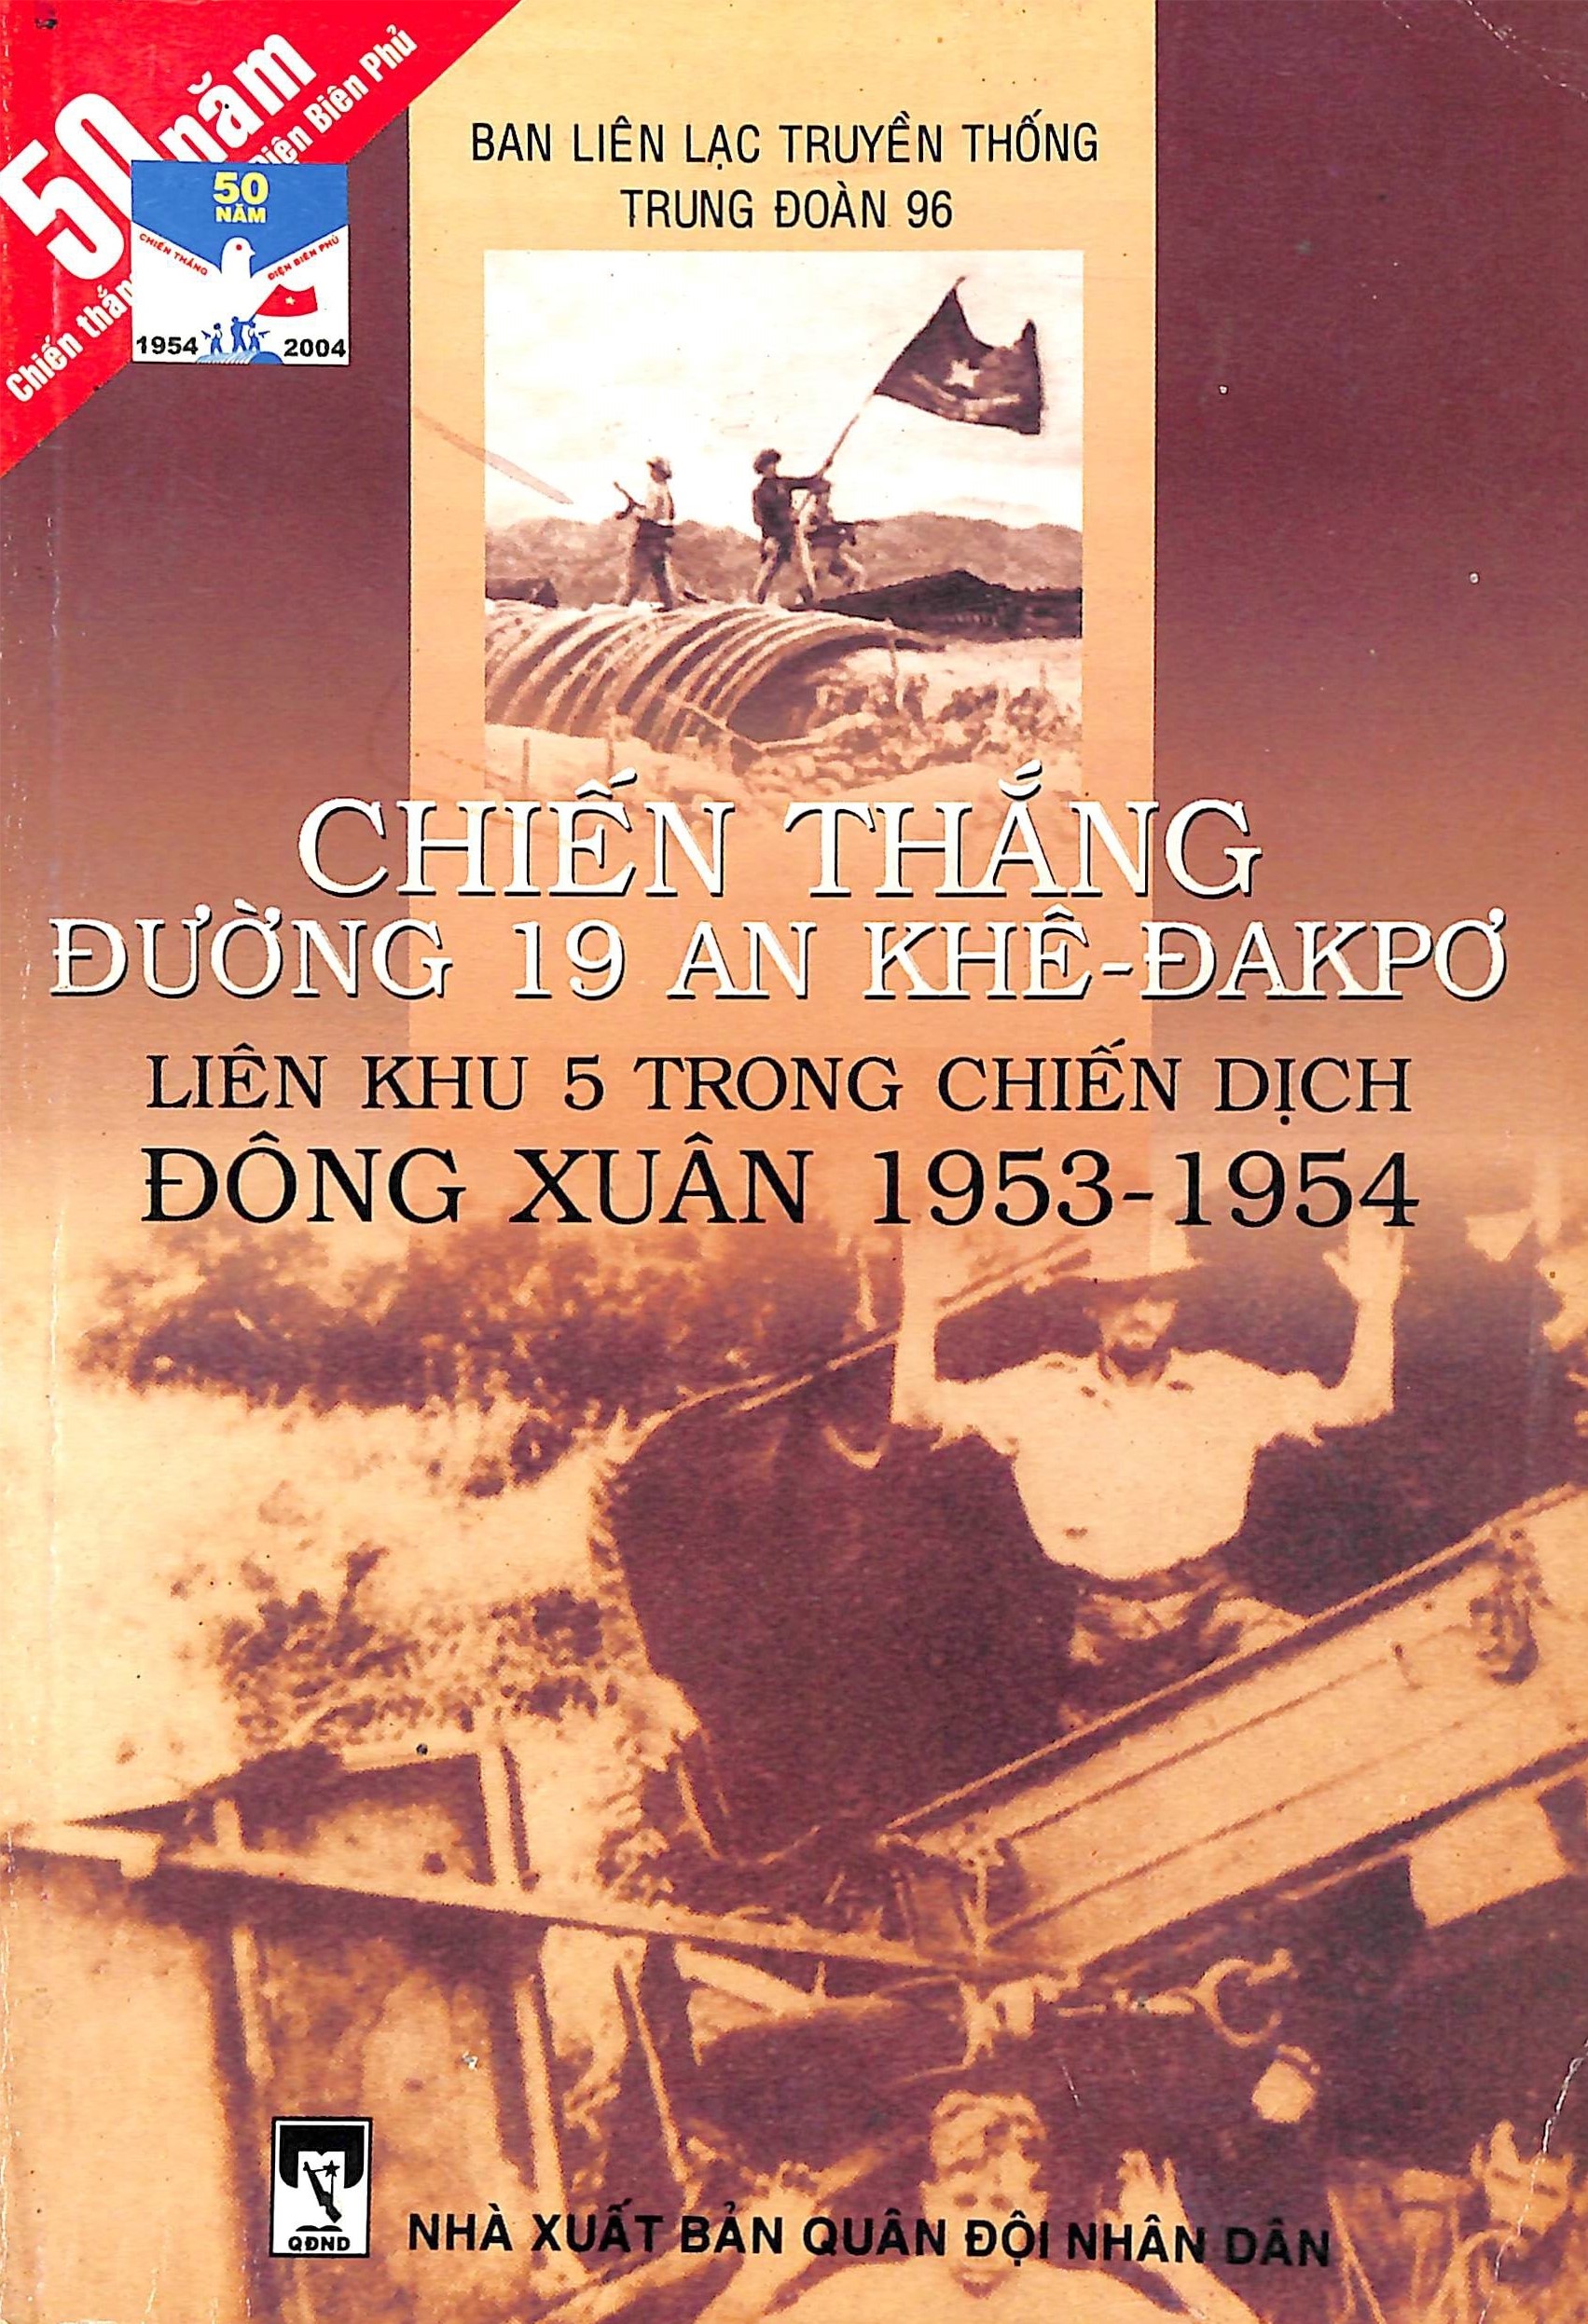 Chiến thắng đường 19 An Khê - Đakpơ liên khu 5 trong chiến dịch Đông Xuân 1953-1954